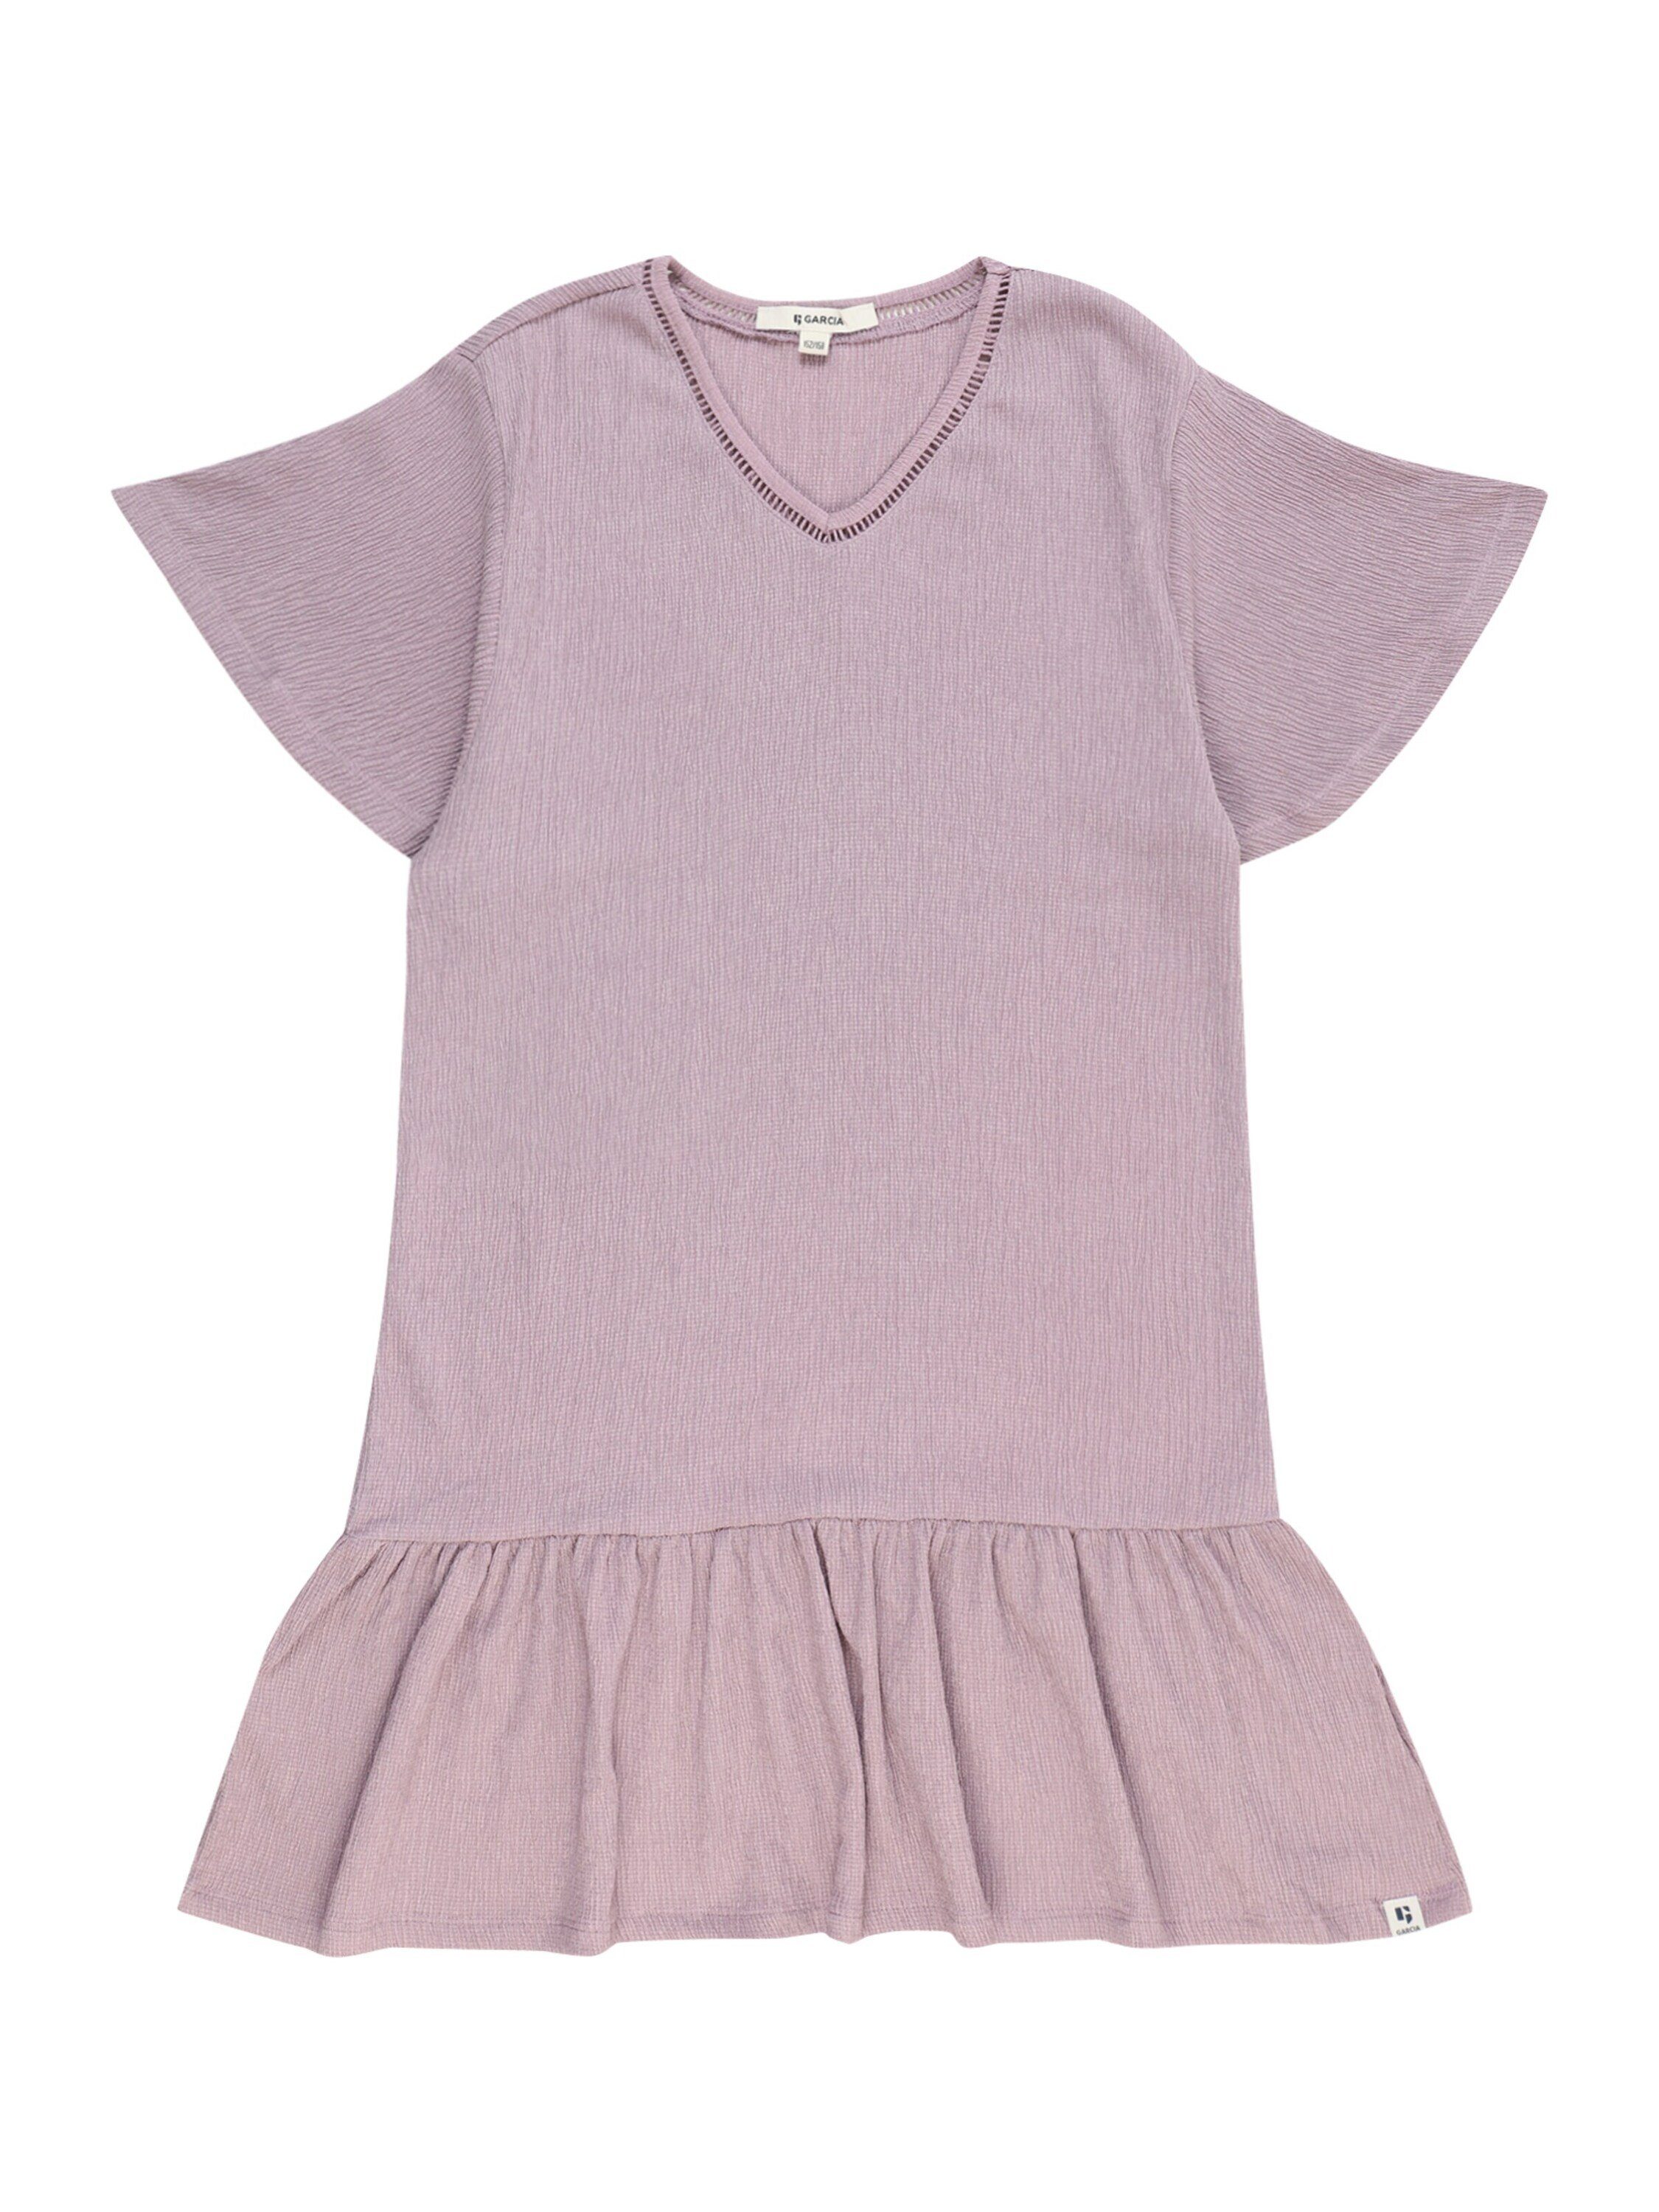 Lila Kinderkleider online kaufen | OTTO